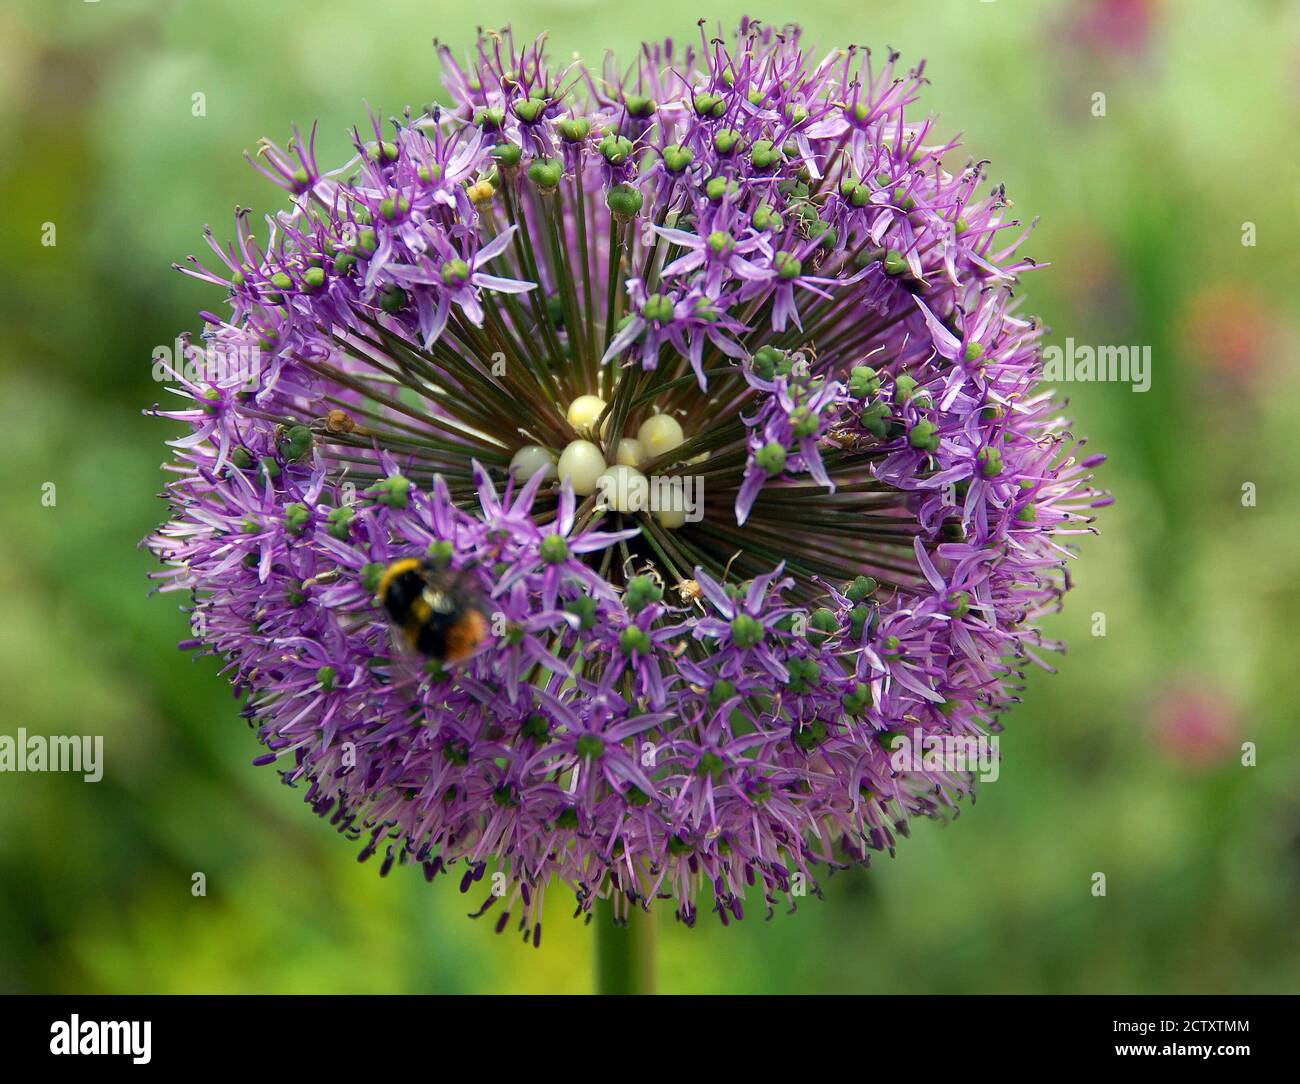 Allium 'batteur du batteur' montrant ses ovaires en forme de perle Banque D'Images